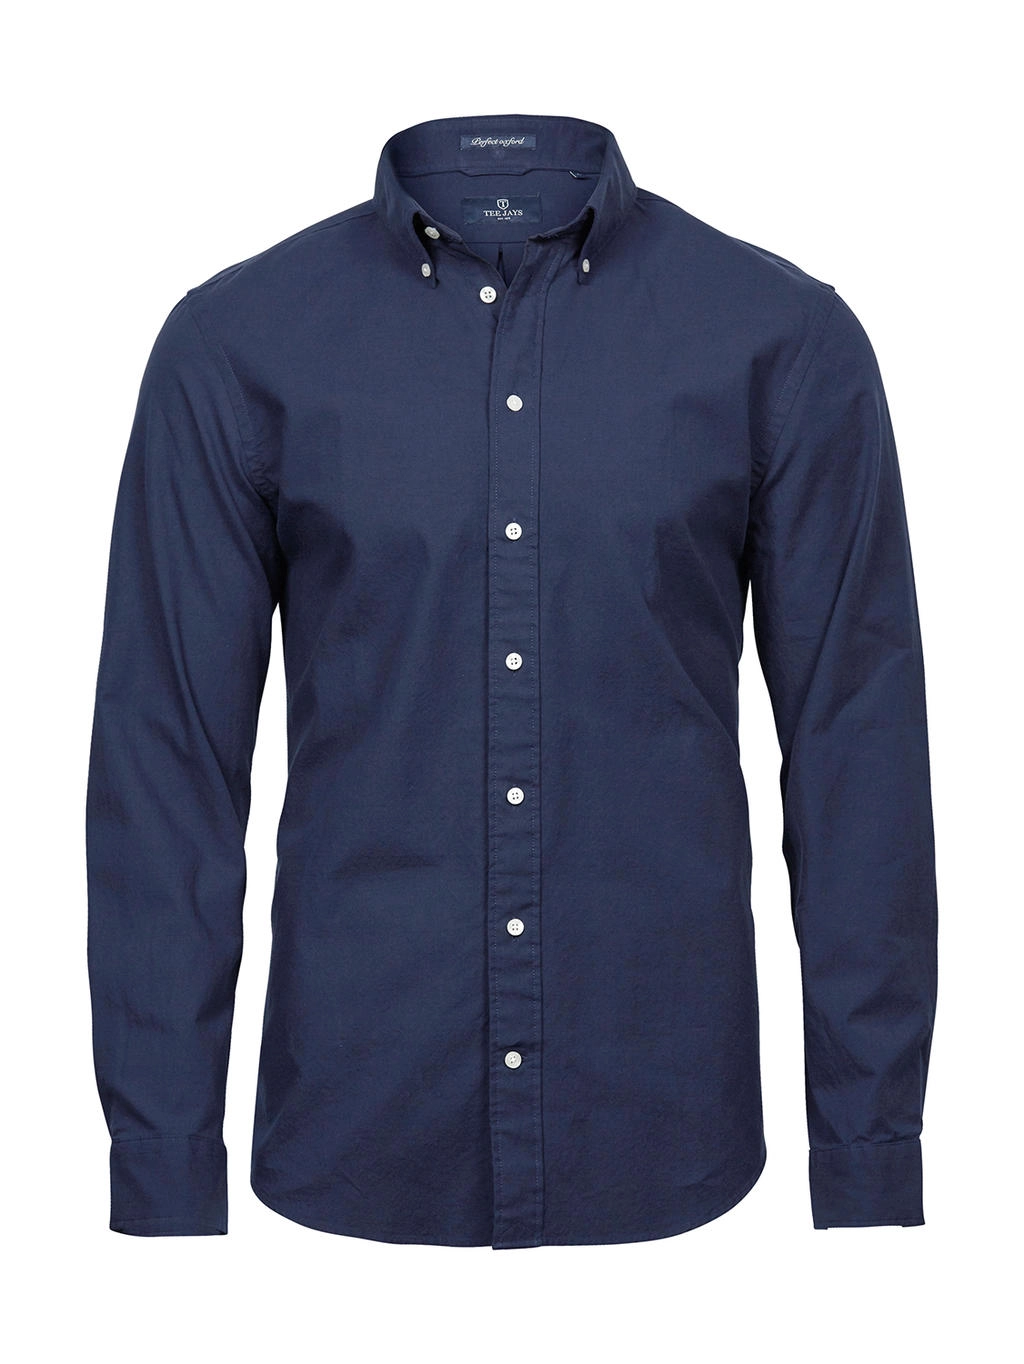 Perfect Oxford Shirt zum Besticken und Bedrucken in der Farbe Navy mit Ihren Logo, Schriftzug oder Motiv.